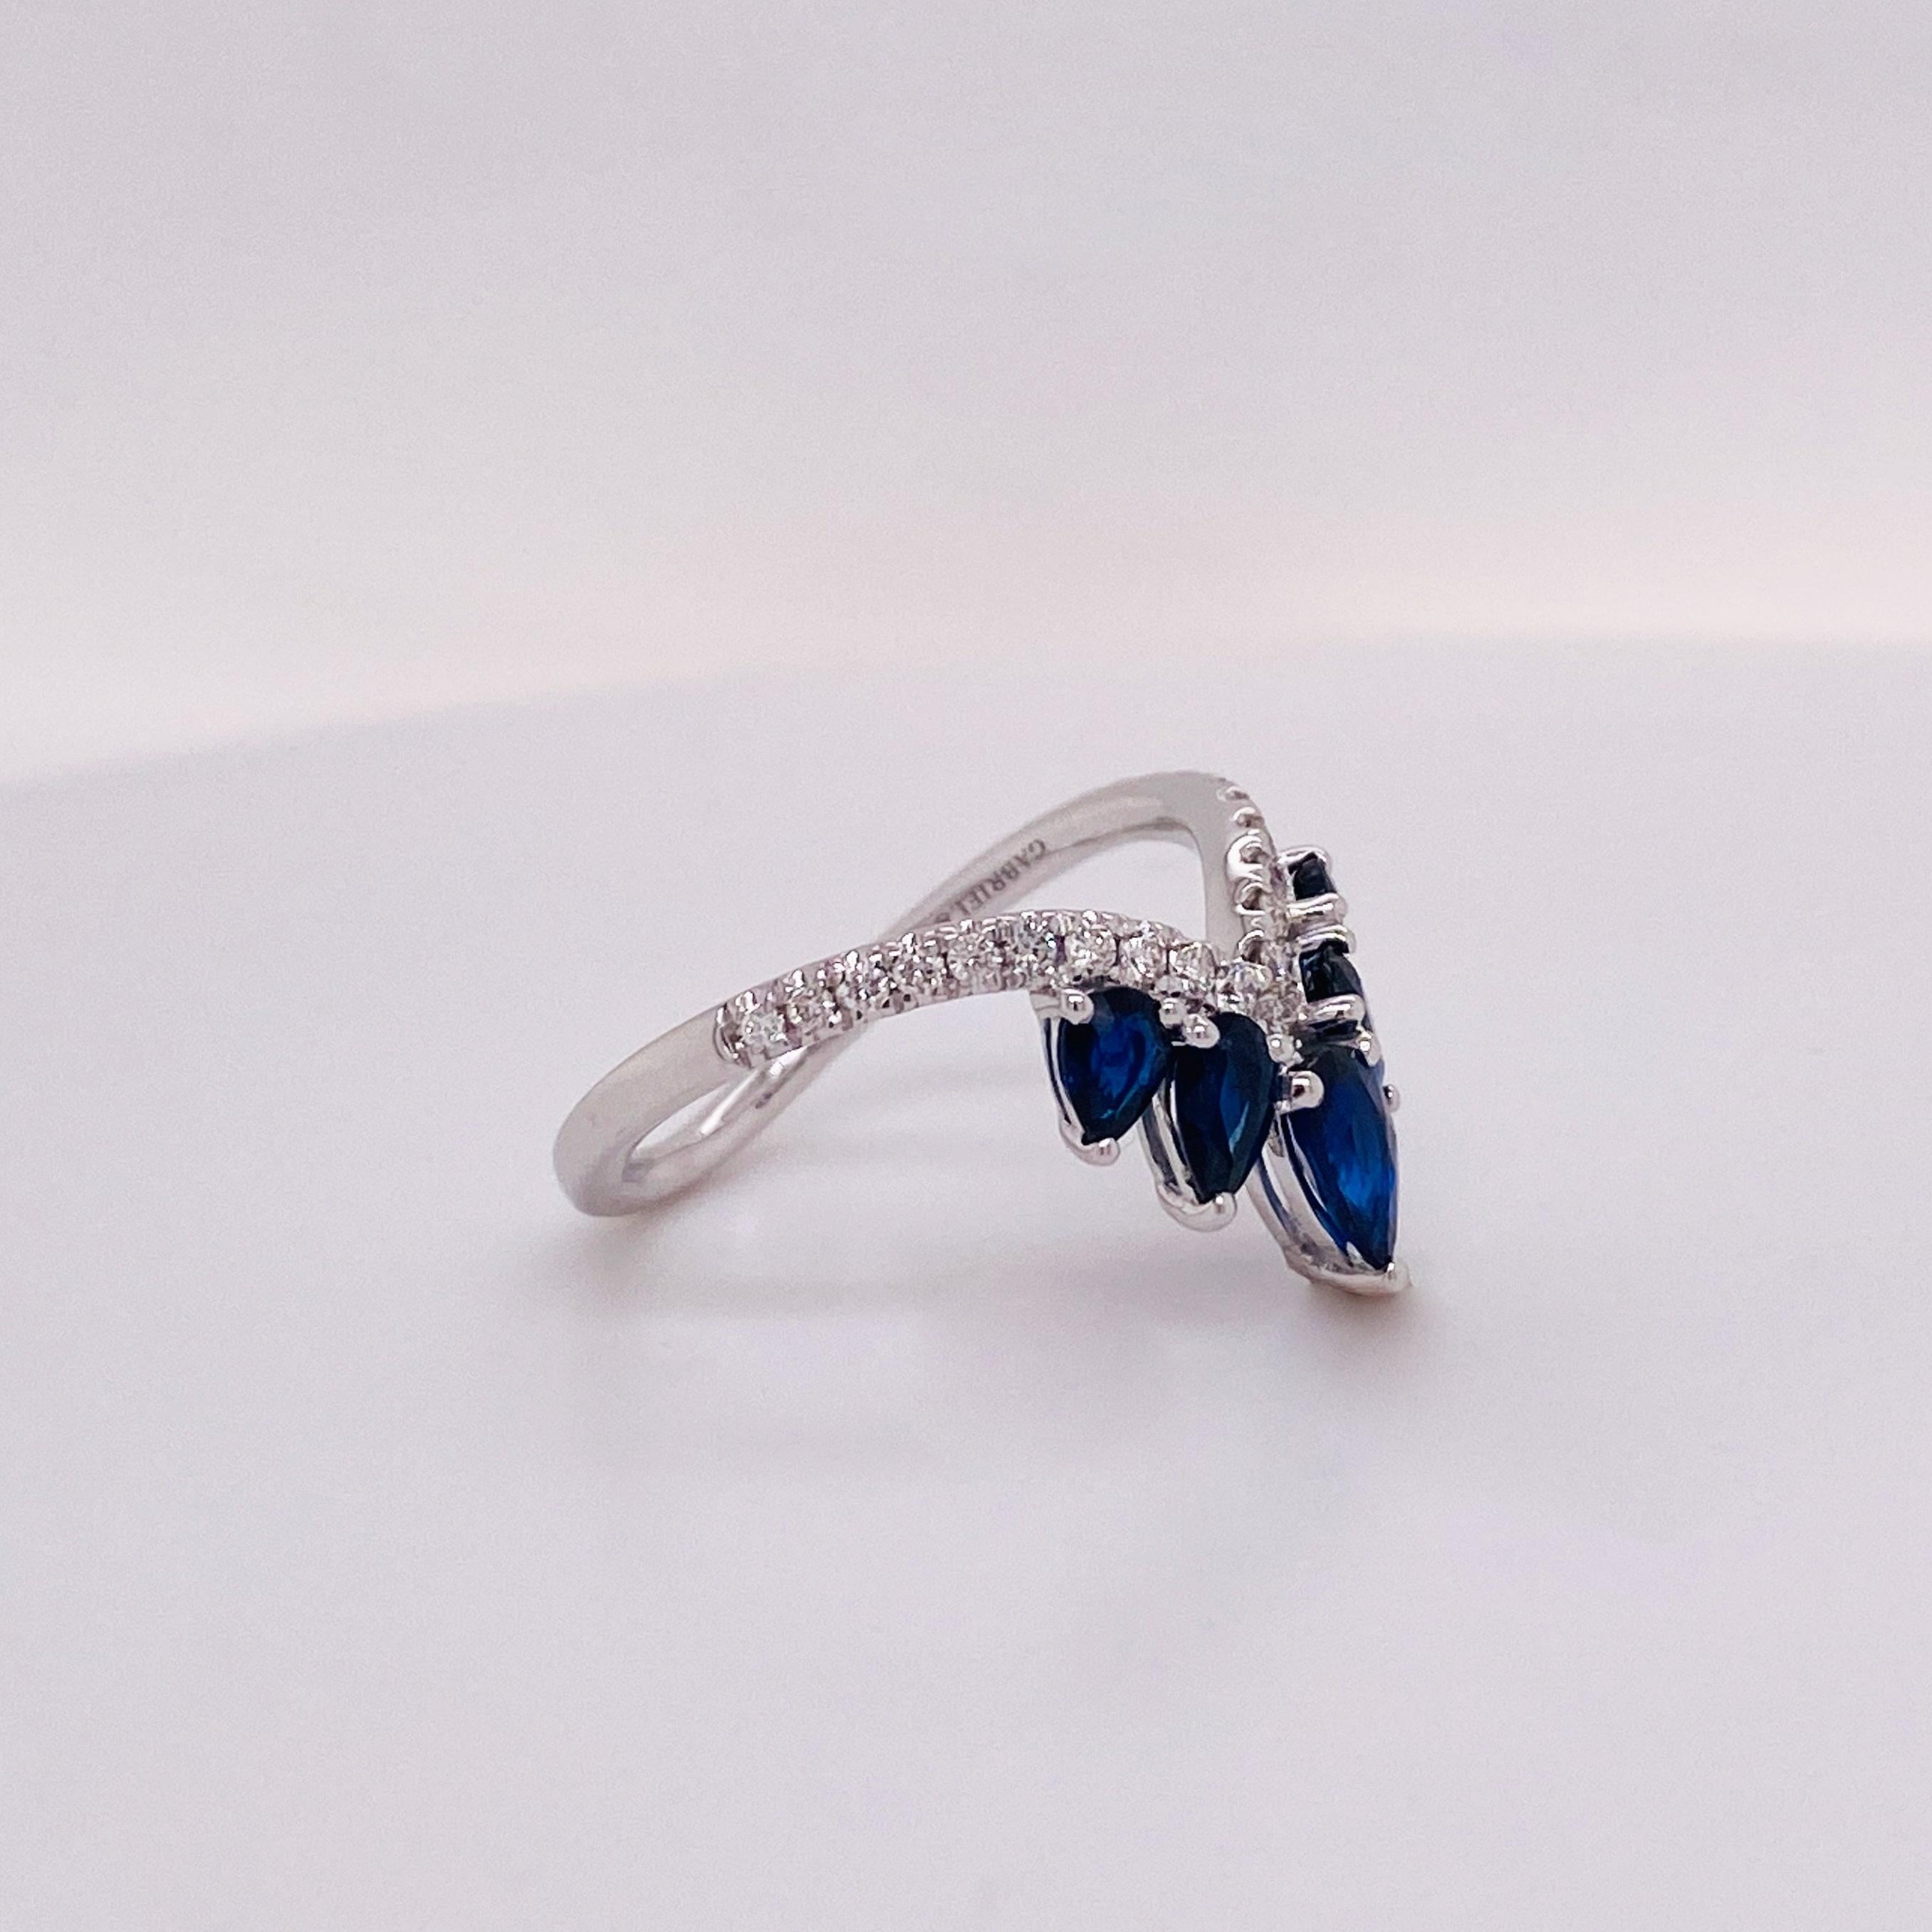 For Sale:  Rich Royal Blue Sapphire & Diamond Chevron Crown Tiara Ring 14KW LR52404W45SA LV 2